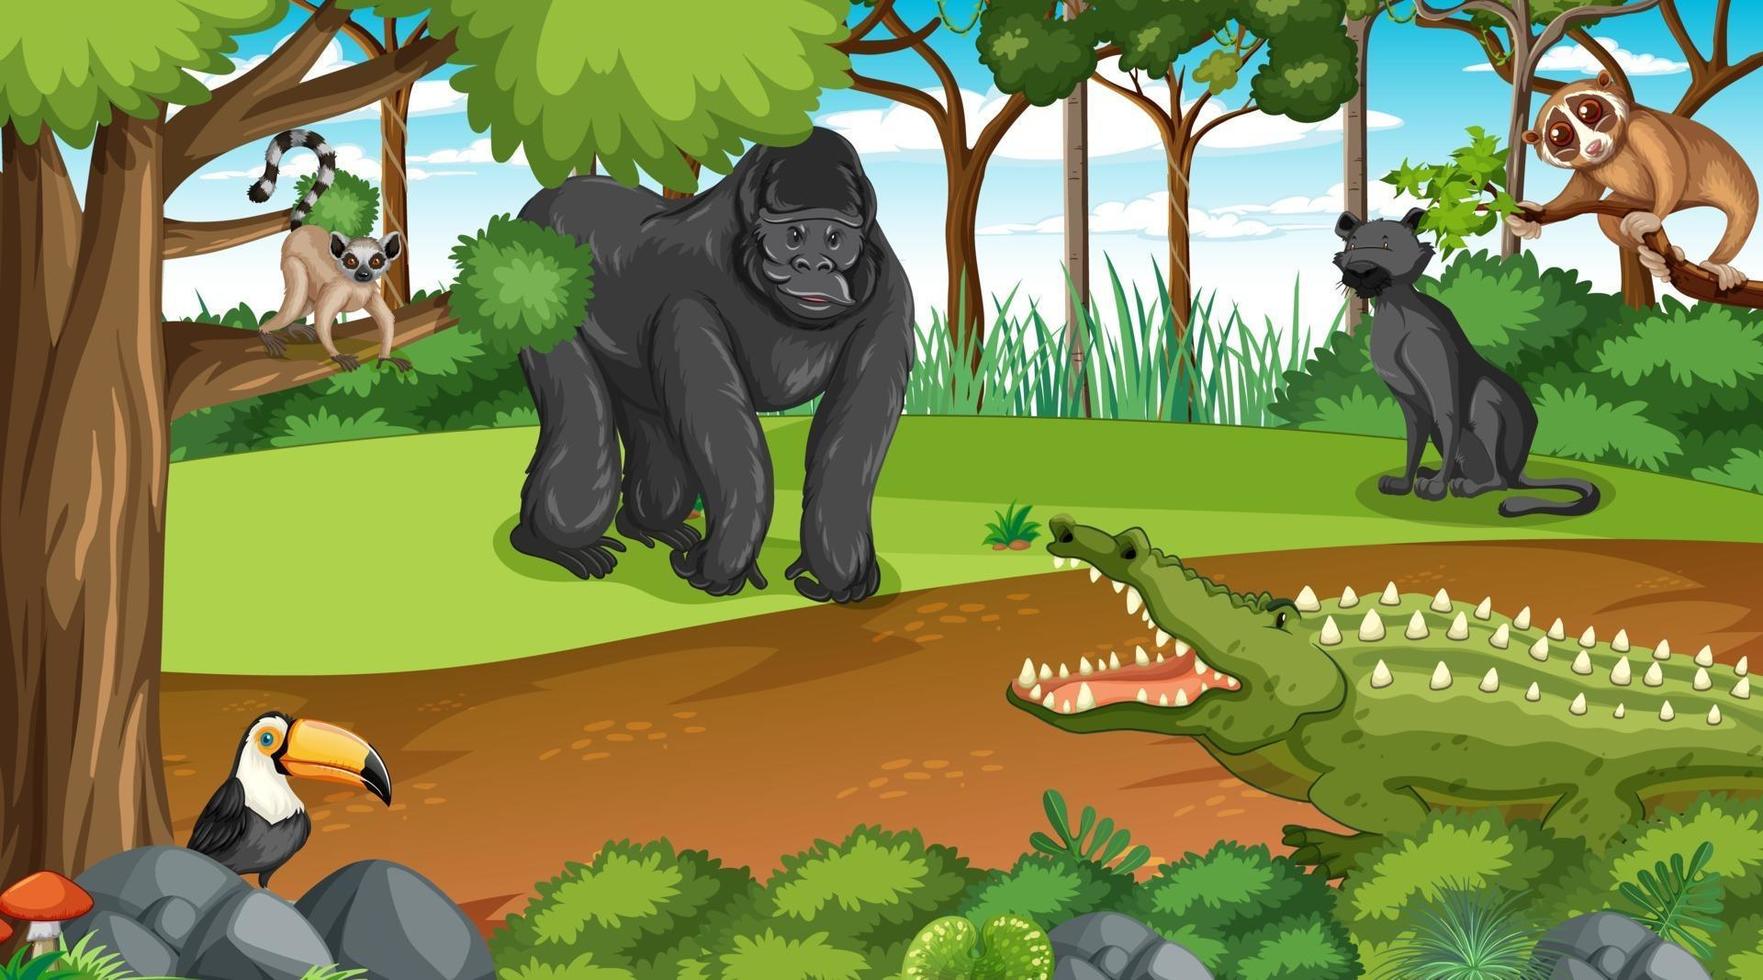 gorilla met andere wilde dieren in de bos- of regenwoudscène vector